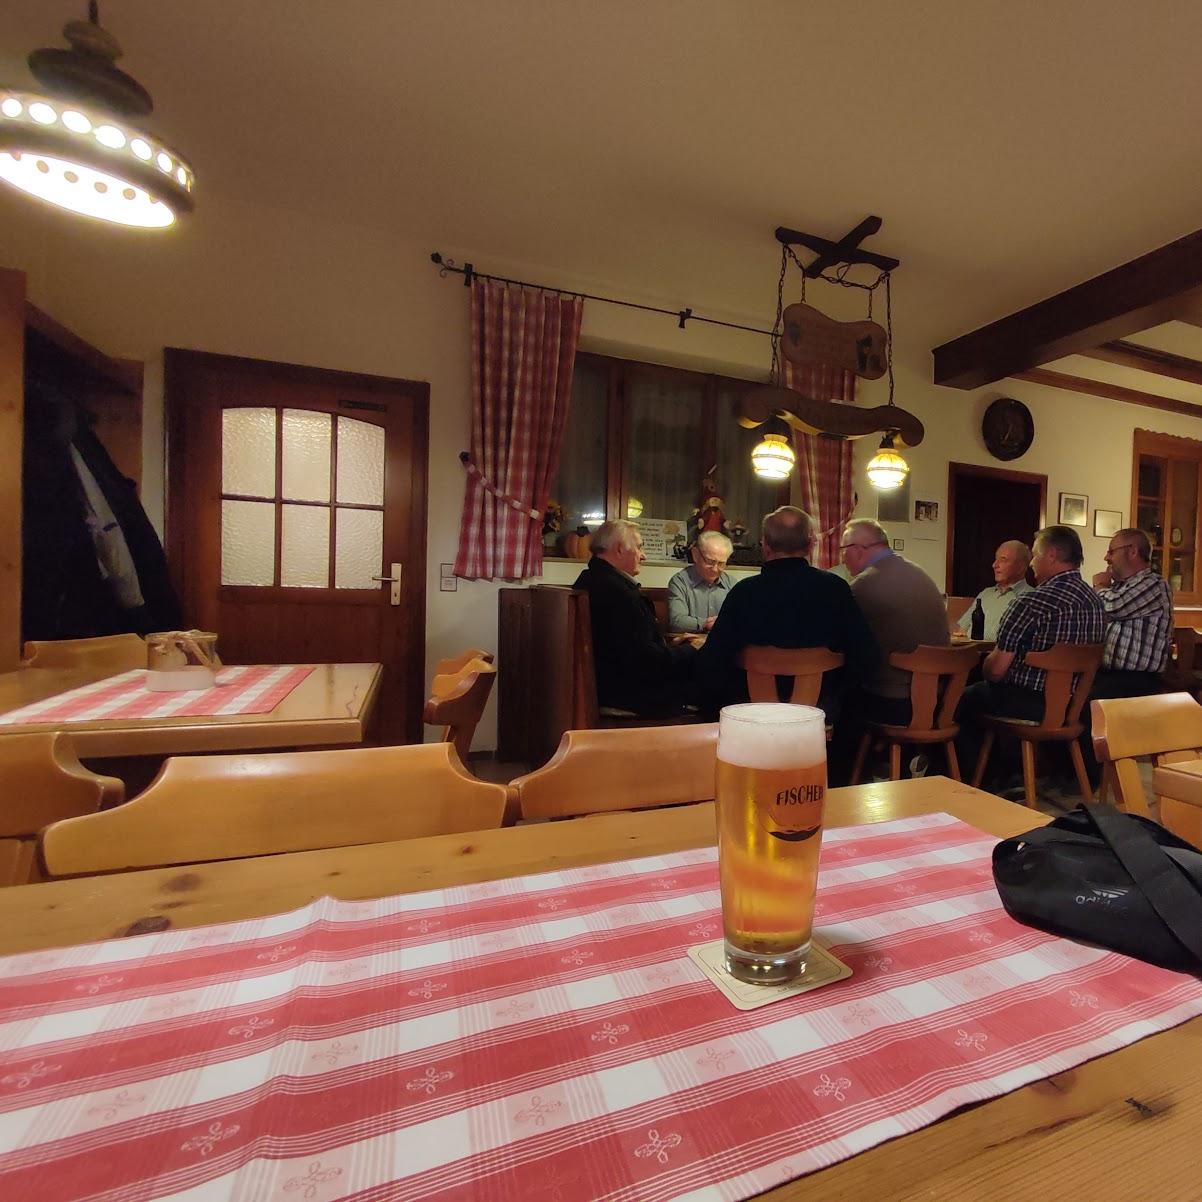 Restaurant "Landgasthof zum Nussbaum - Edeltraut & Georg Deboy" in Herrieden